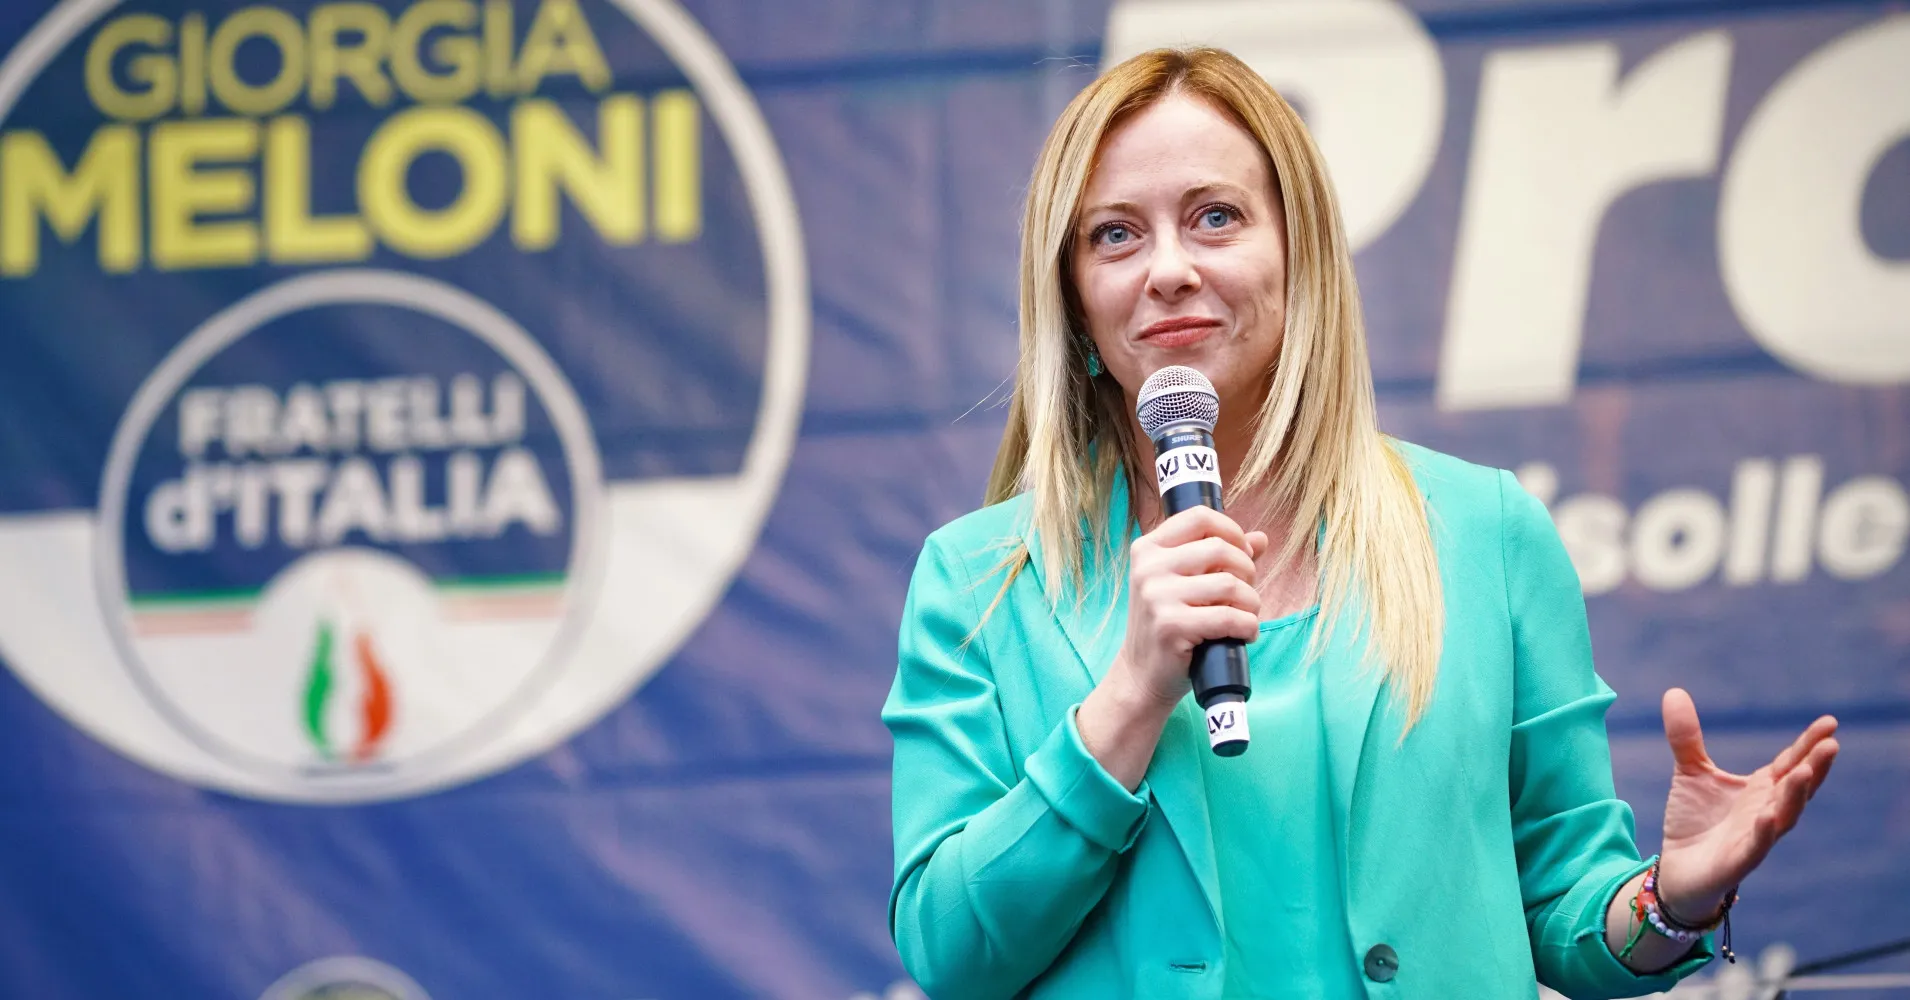 Giorgia Meloni è pronta a governare.  Le elezioni italiane sono chiaramente dominate da un’alleanza di partiti di destra